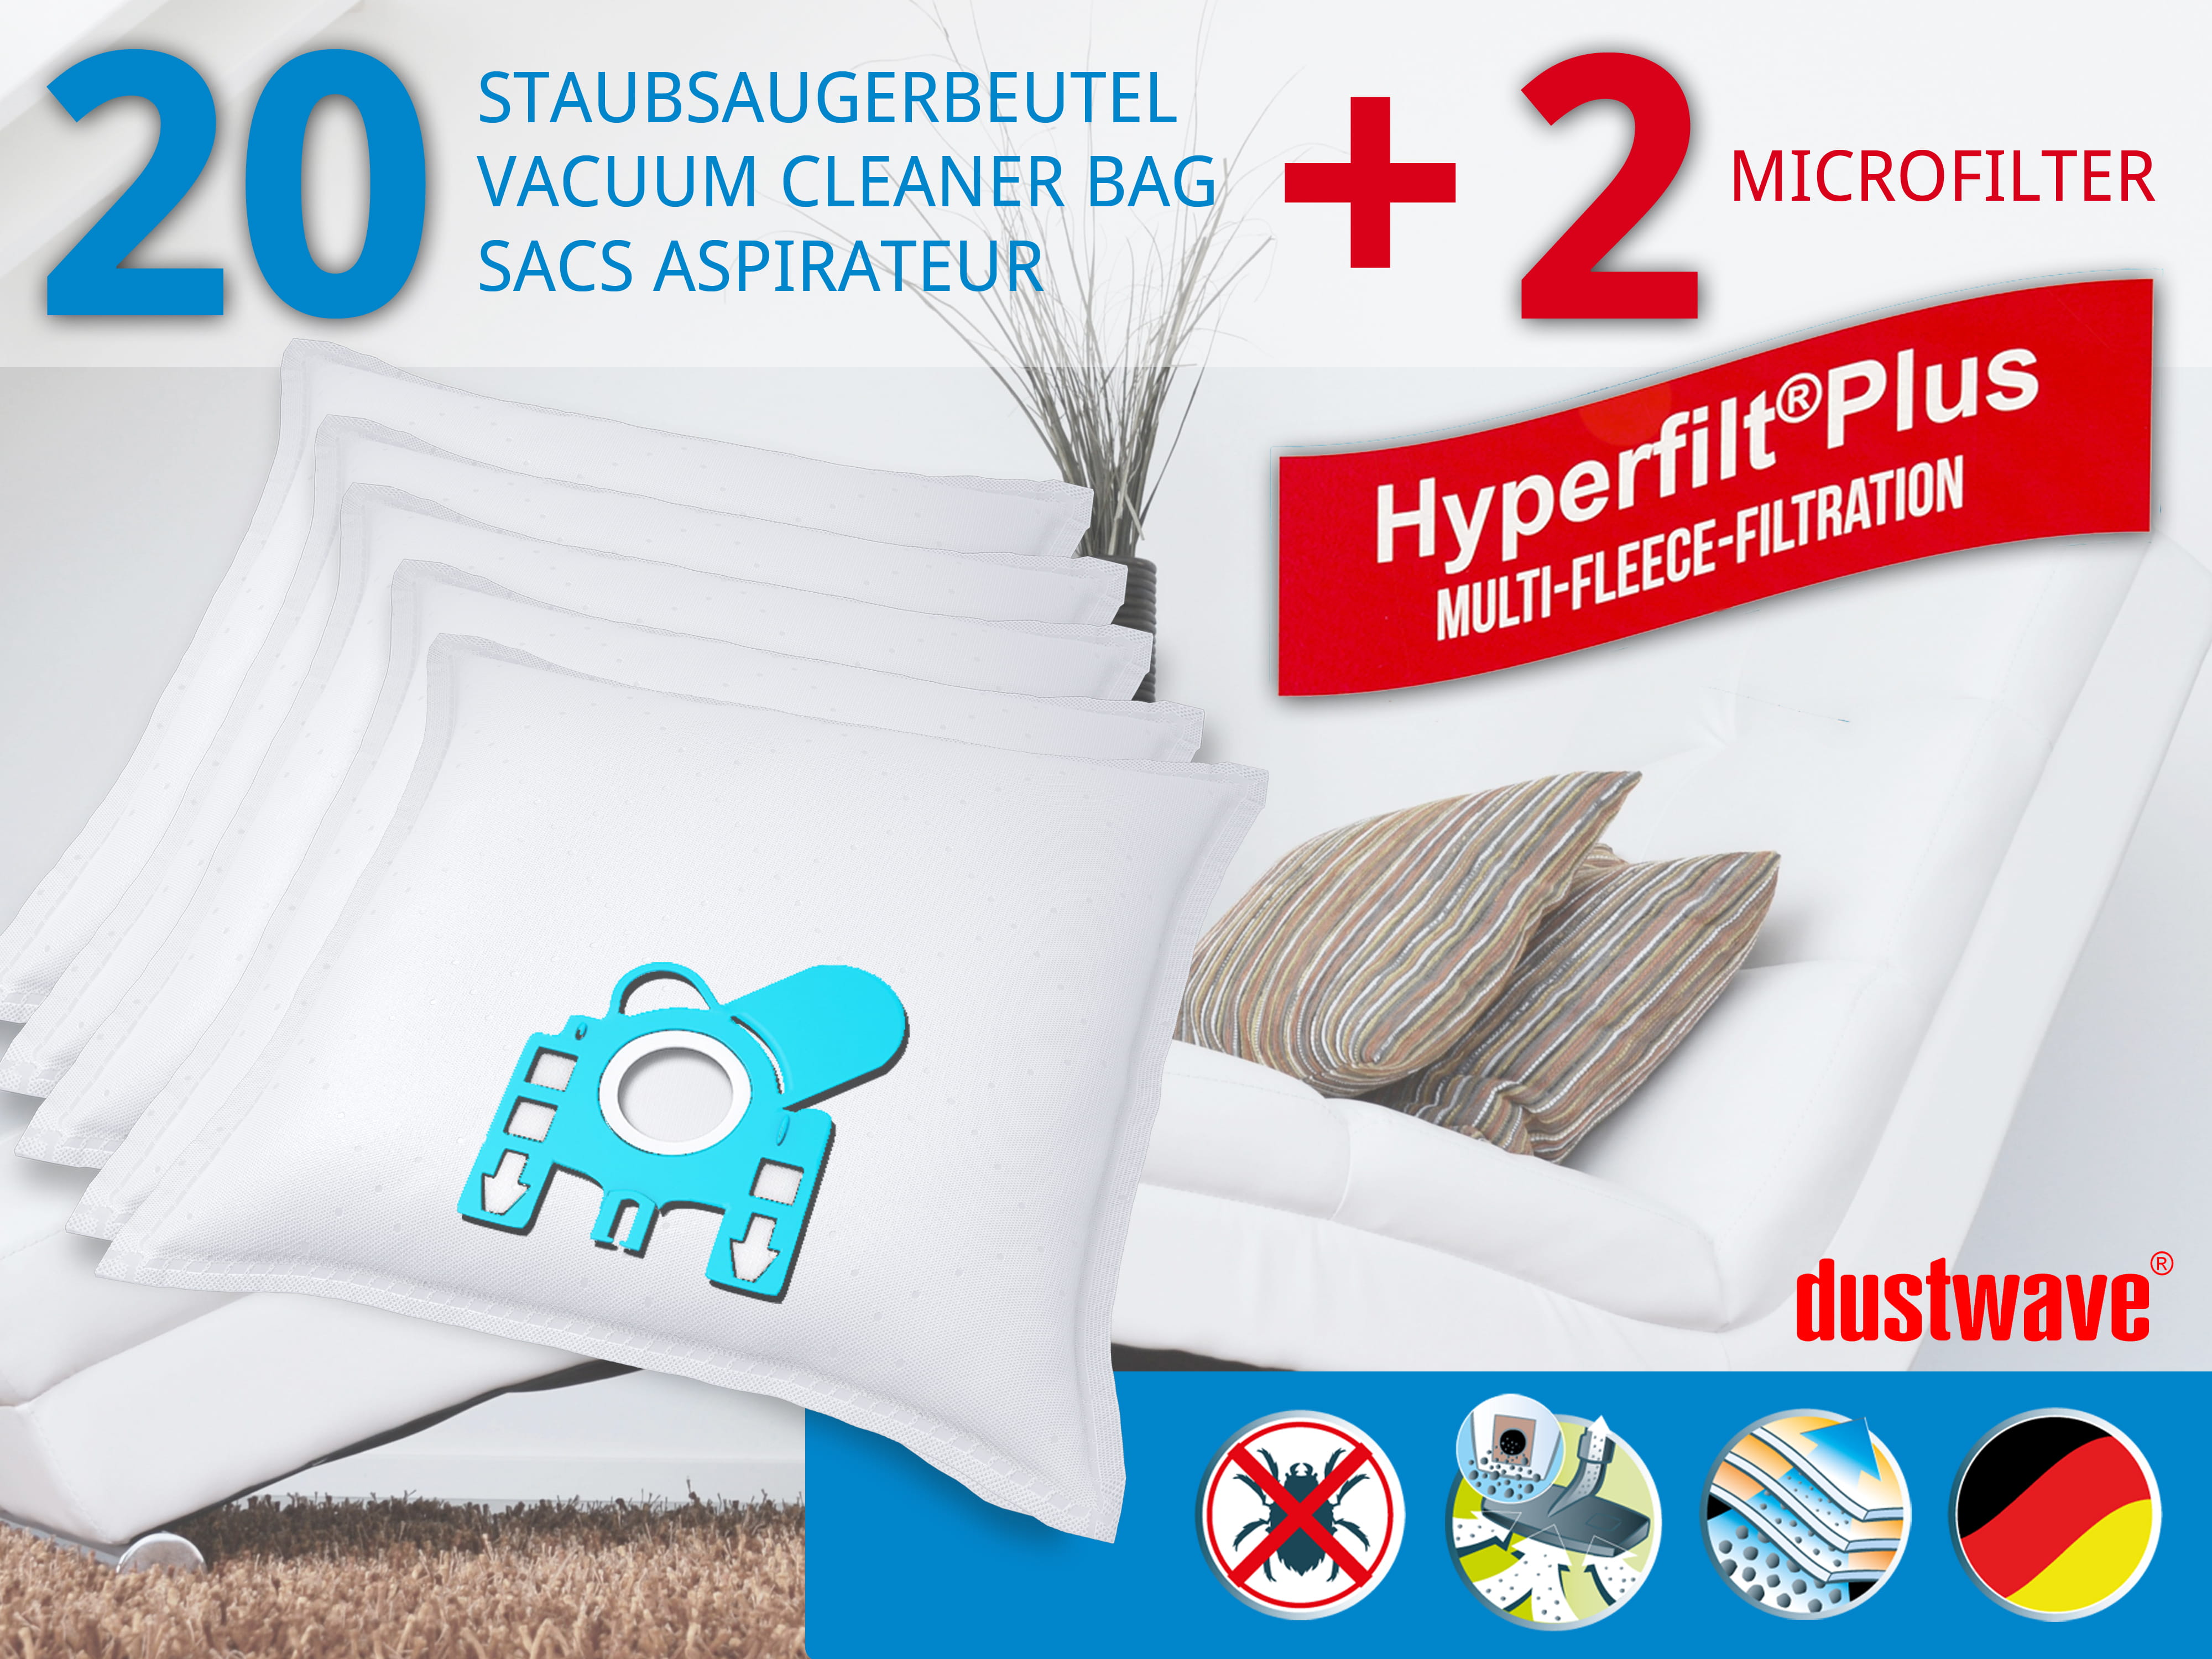 Dustwave® 20 Staubsaugerbeutel für Miele S431i / S 431 i - hocheffizient, mehrlagiges Mikrovlies mit Hygieneverschluss - Made in Germany